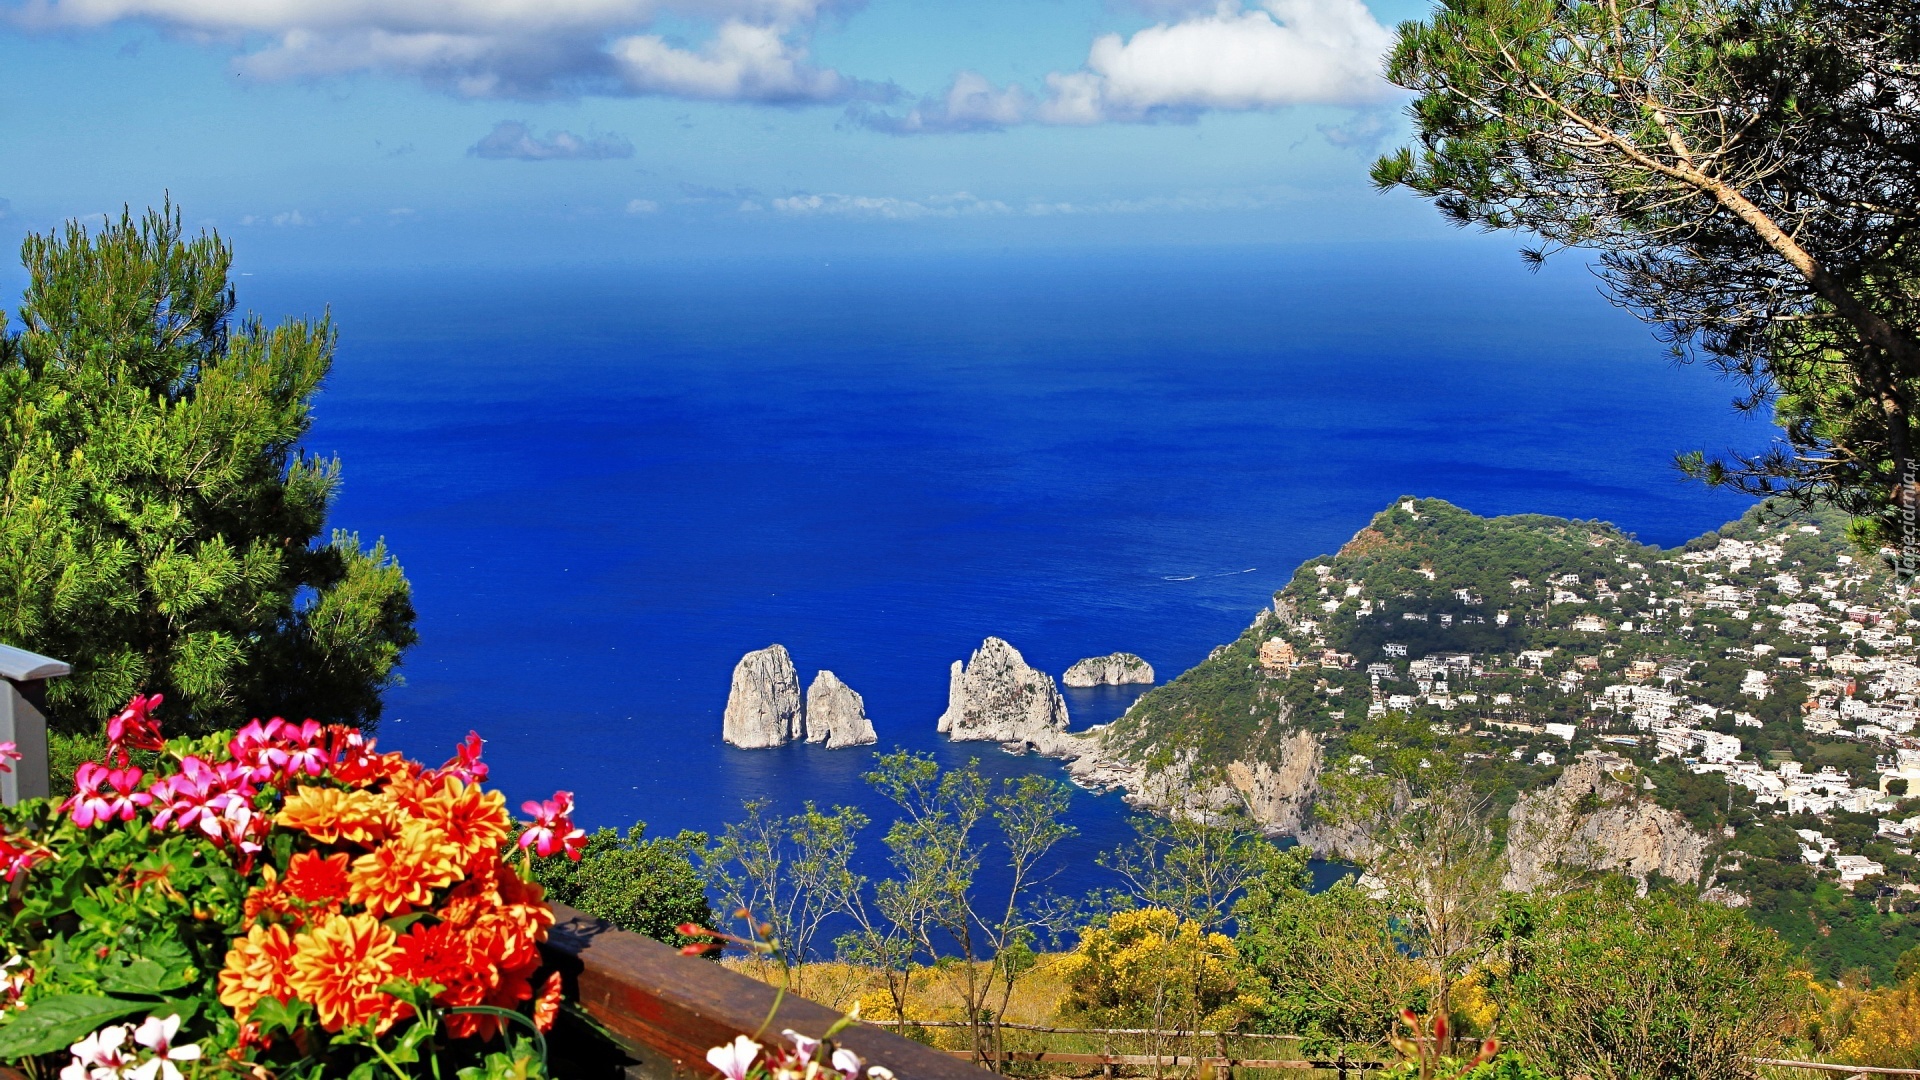 Morze, Skały, Kwiatki, Capri